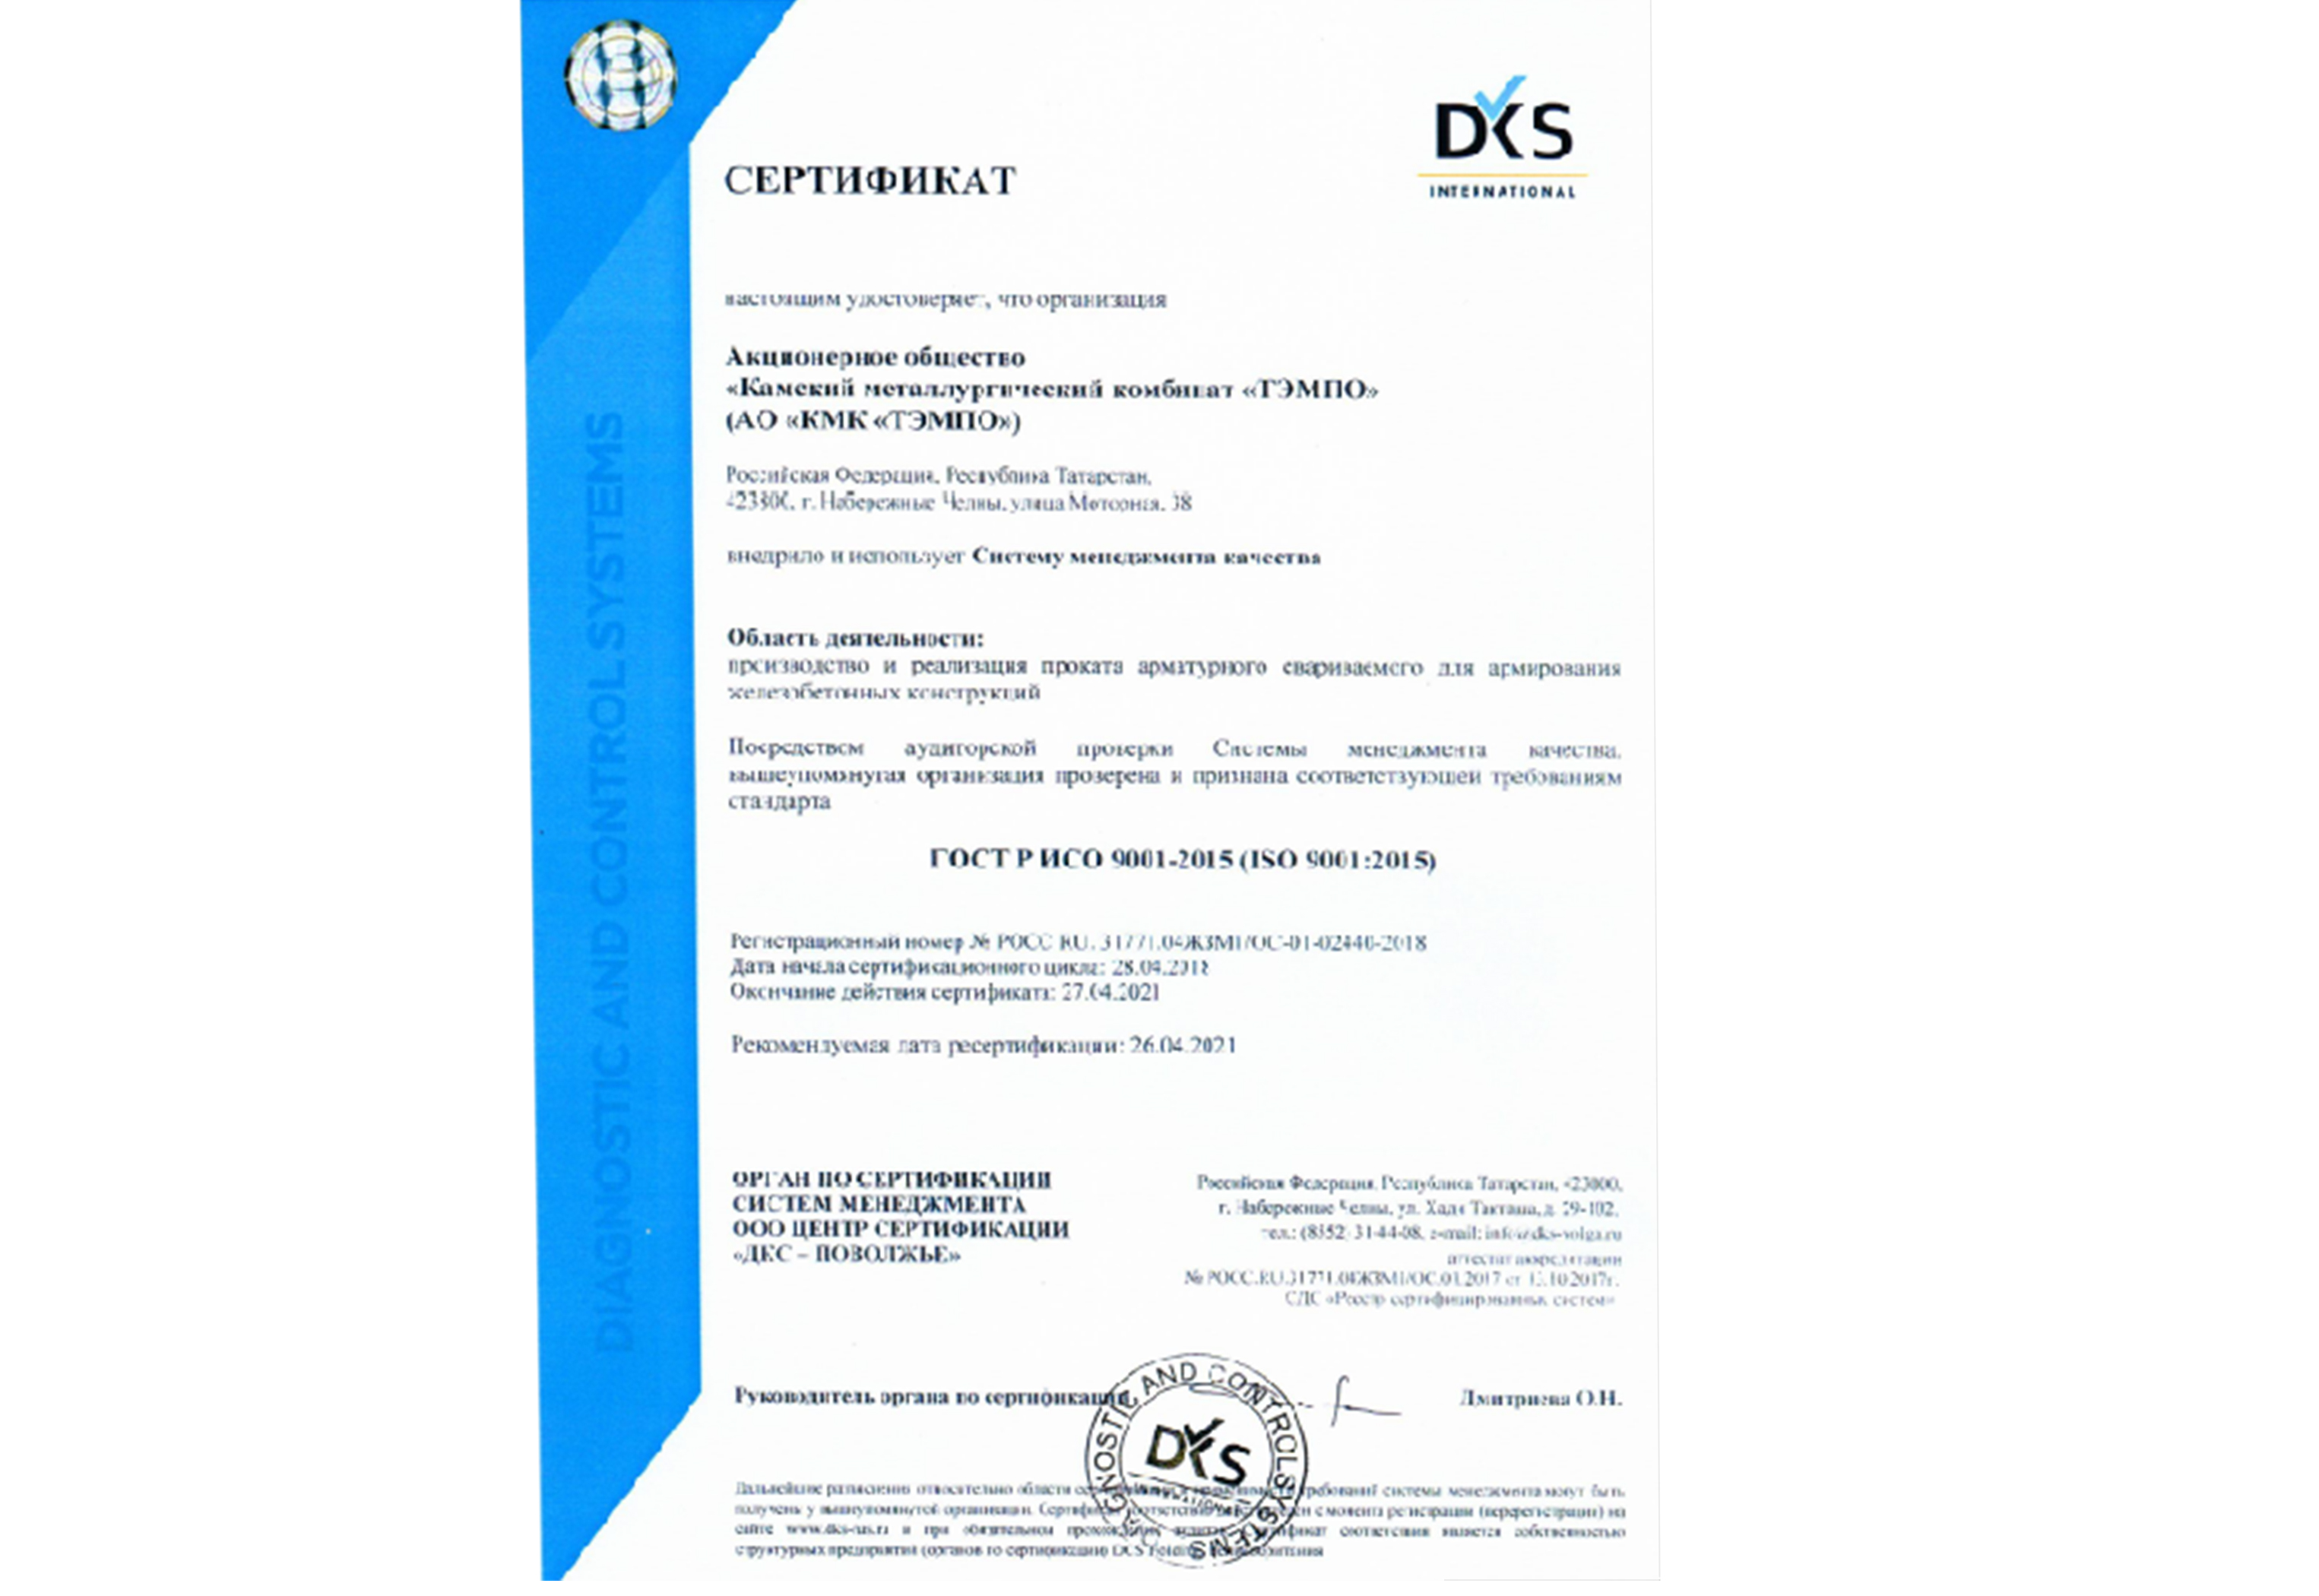 Камский металлургический комбинат «ТЭМПО» прошел сертификацию Системы менеджмента качества, соответствующей требованиям стандарта ISO 9001:2015.